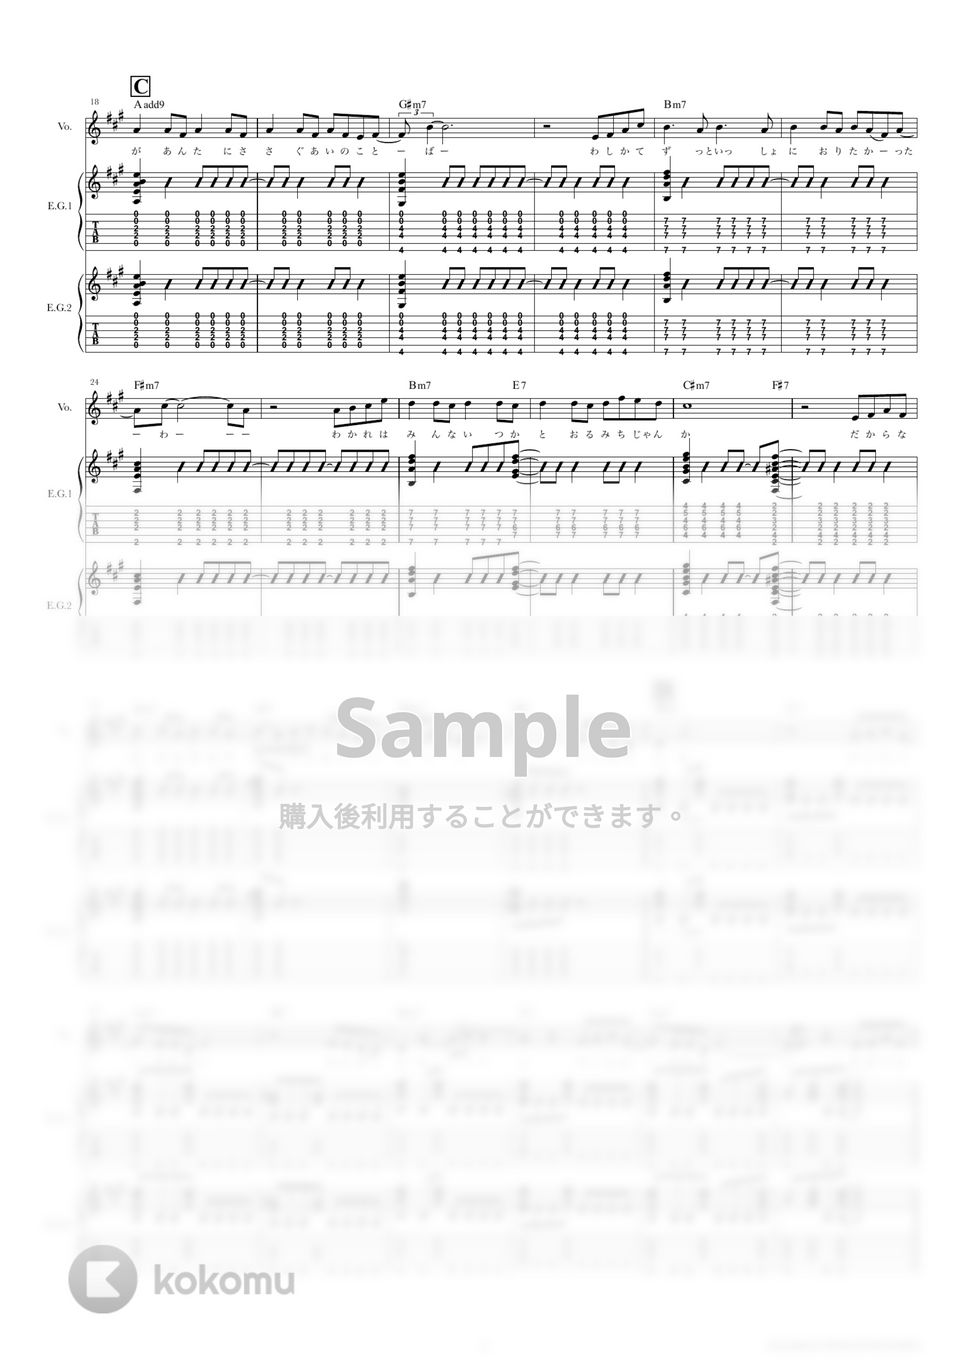 藤井 風 - さよならべいべ (ギタースコア・歌詞・コード付き) by TRIAD GUITAR SCHOOL